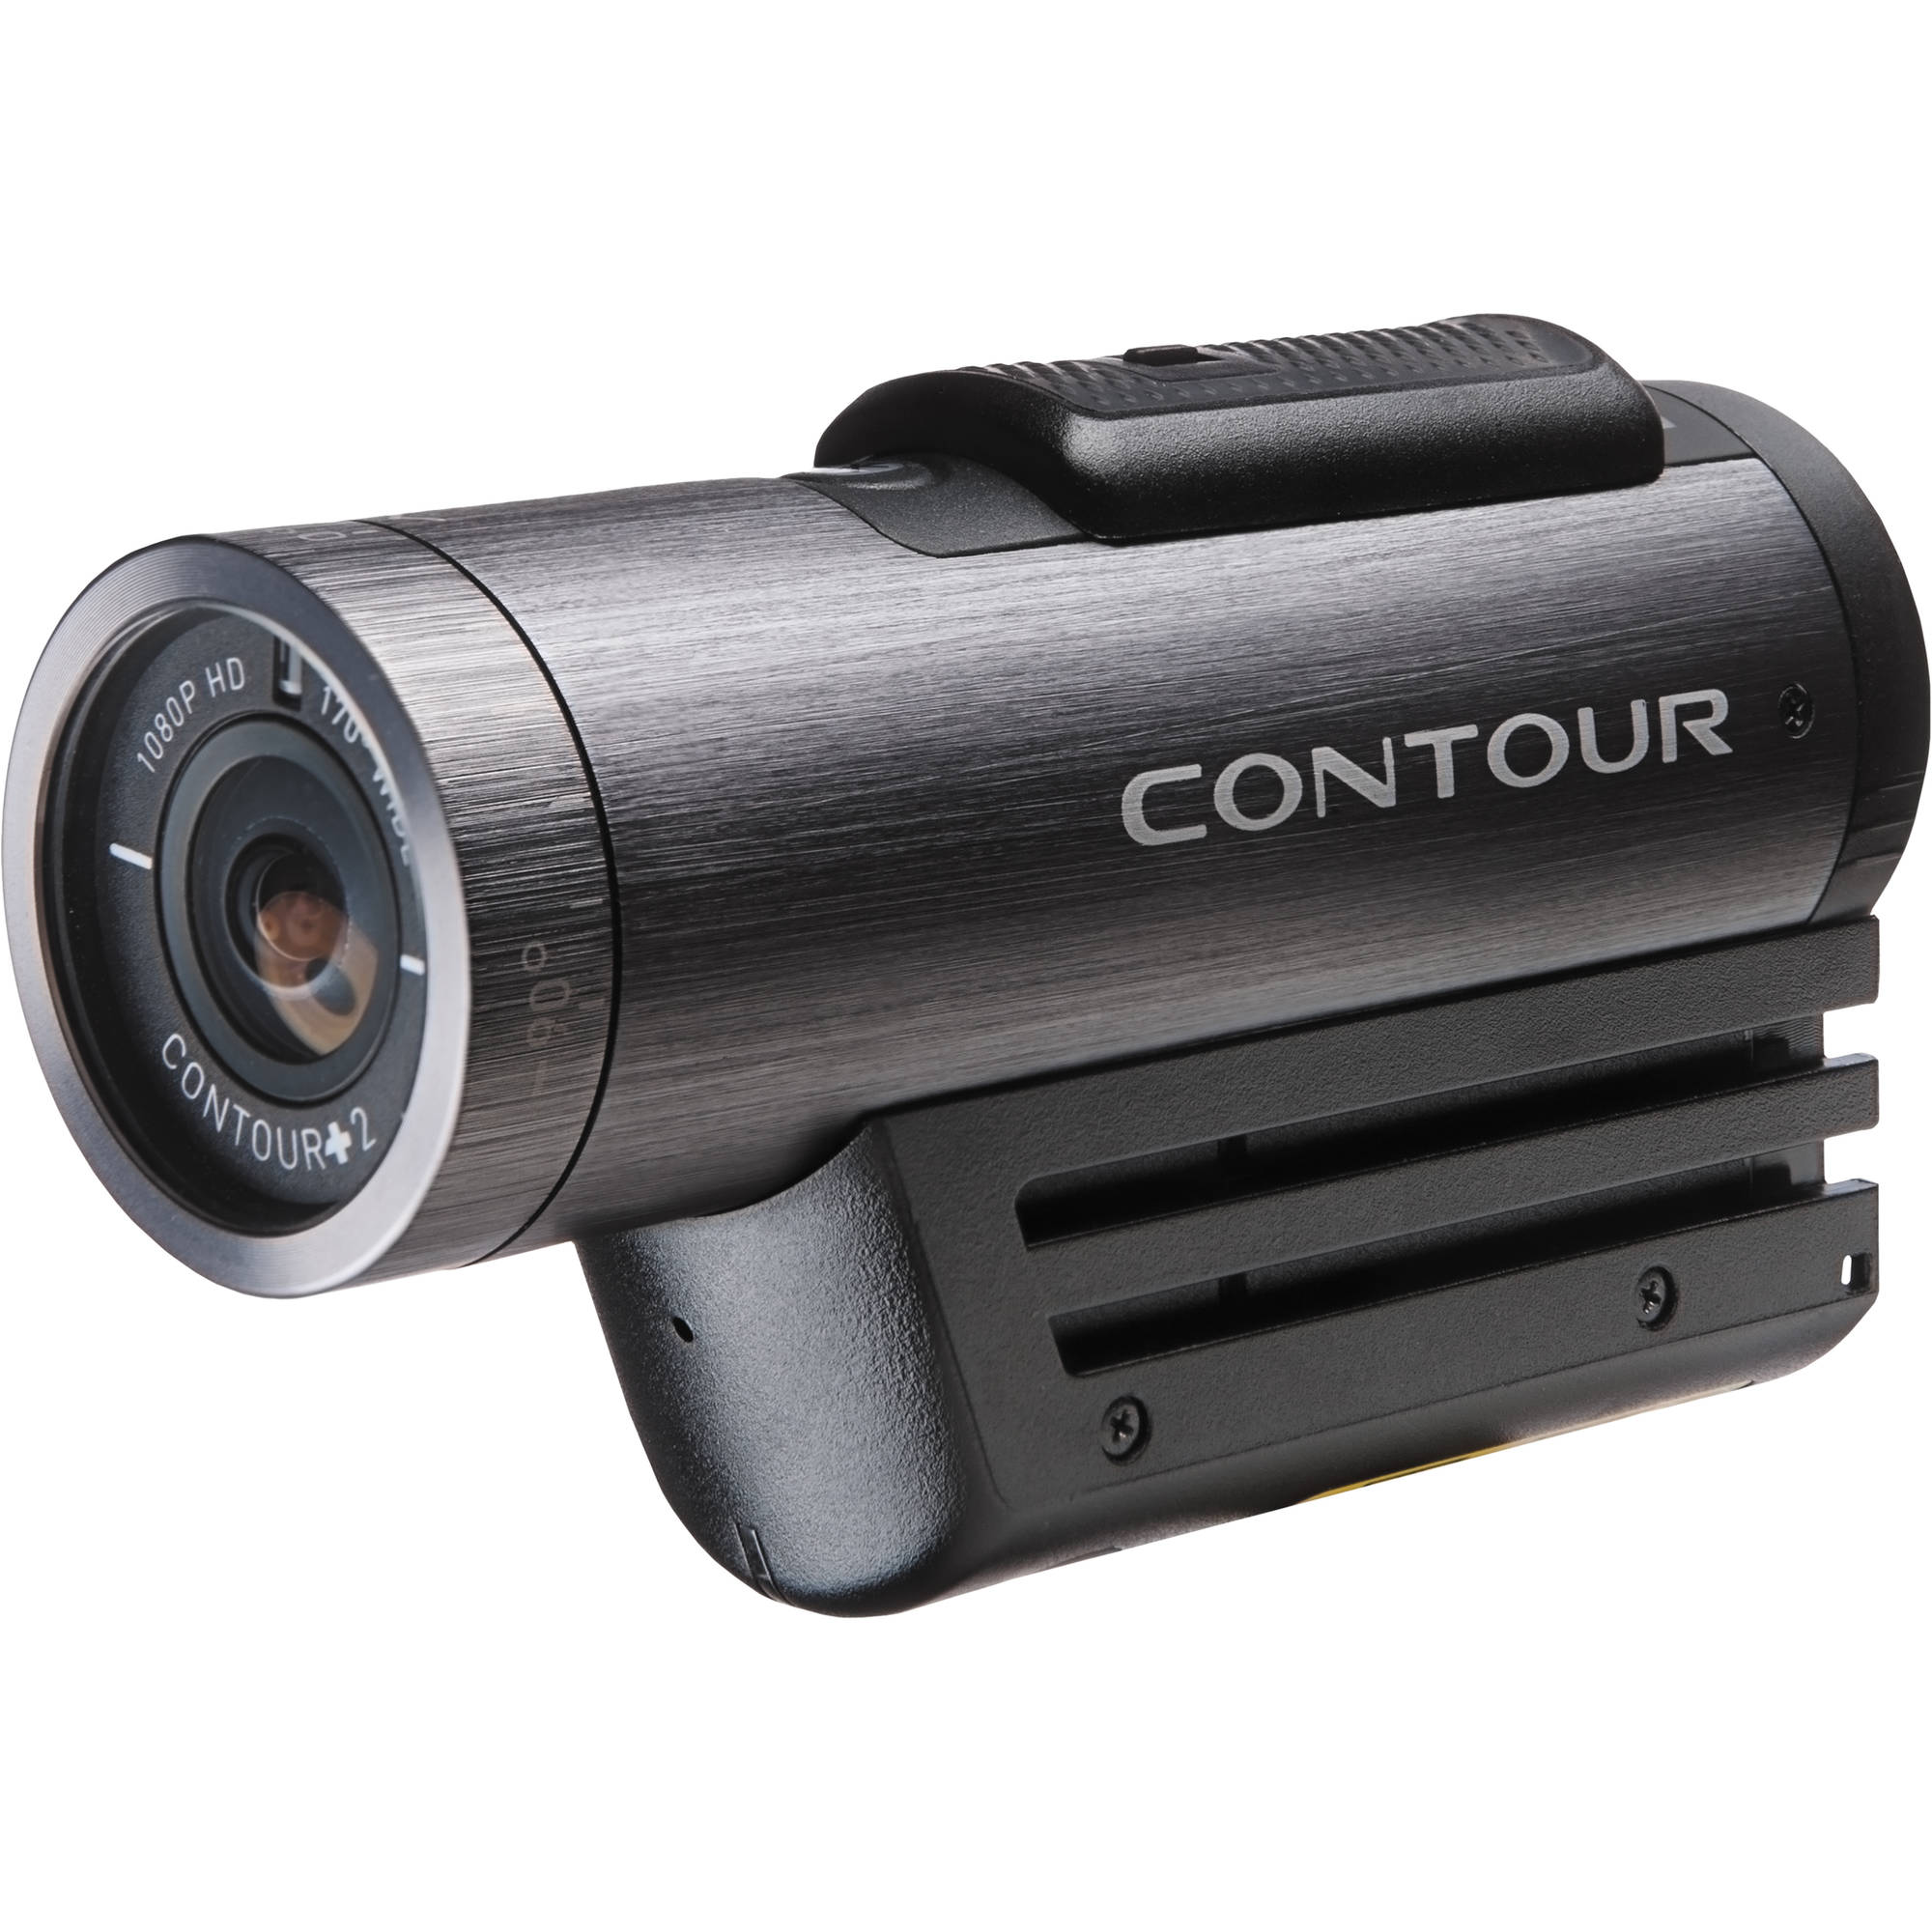 Contour Contour 2 Hd Action Camcorder 1701 B H Photo Video